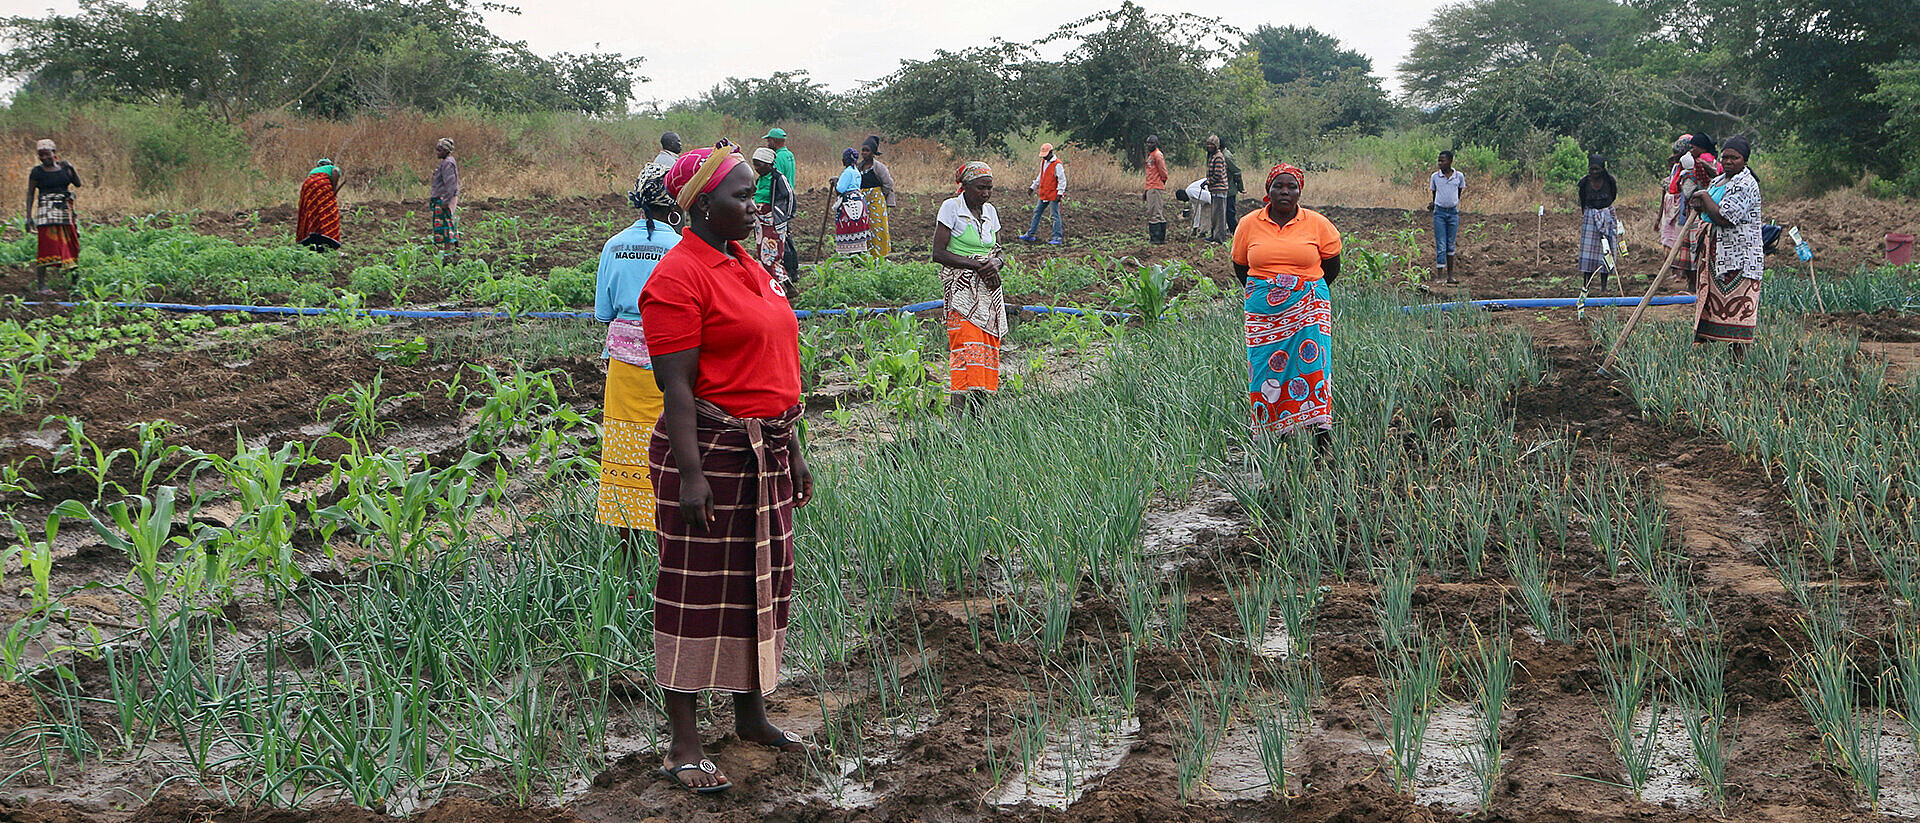 Frauen auf einem Feld in Mosambik 